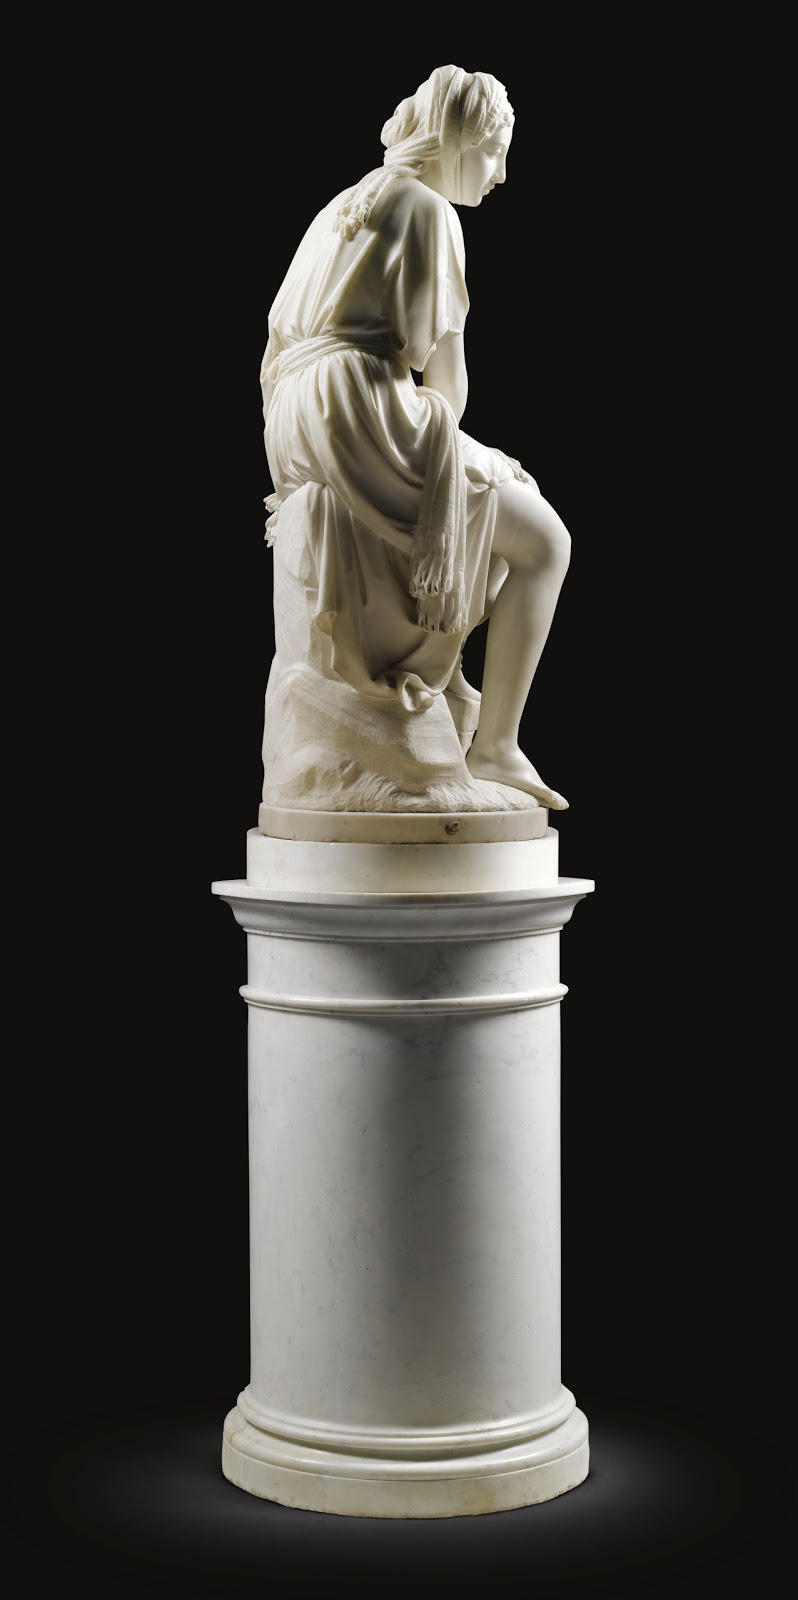 Giovanni+Battista+Lombardi-1823-1880 (5).jpg